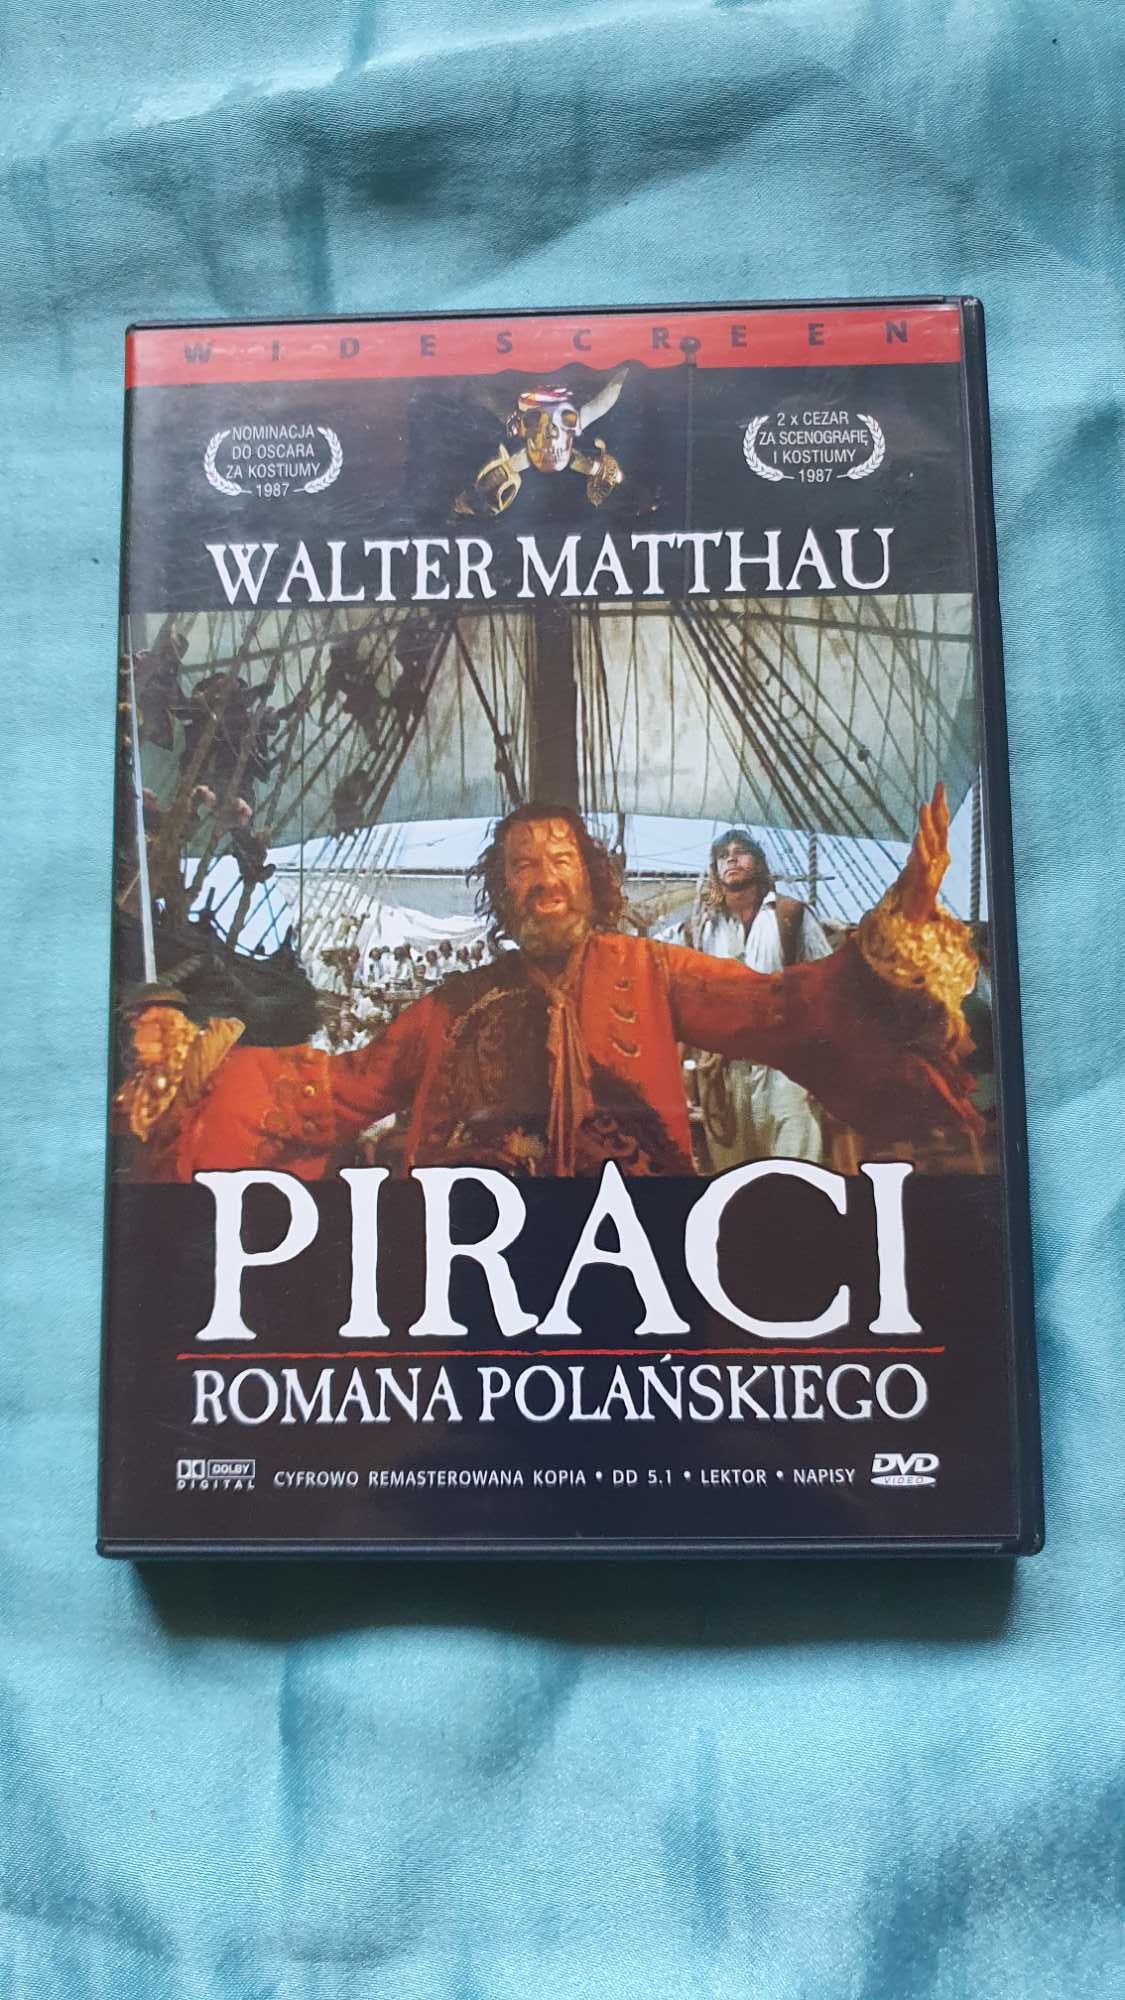 PIRACI  (1986)  Roman Polański  DVD